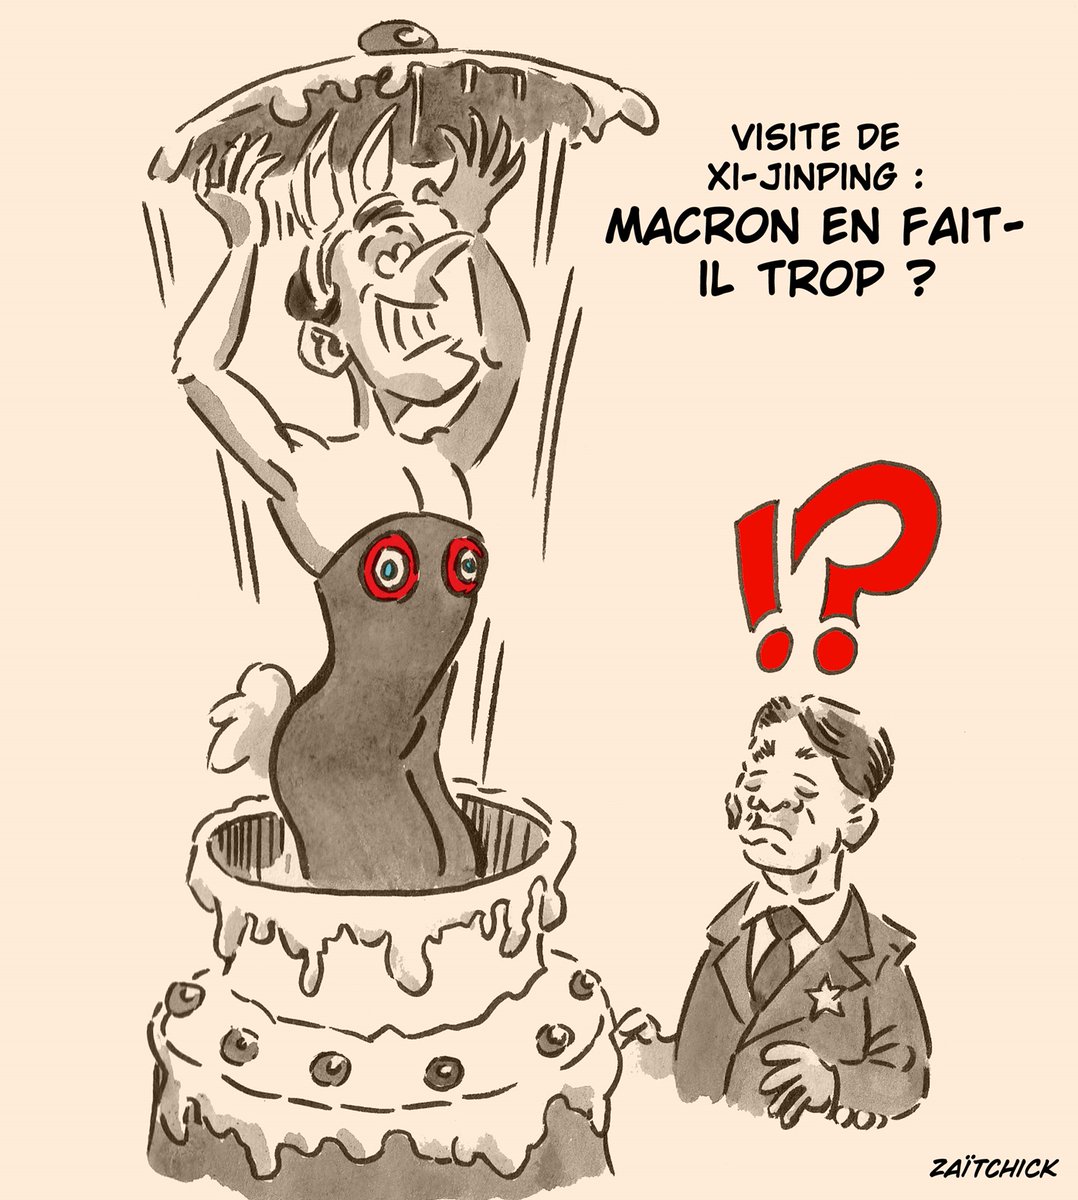 Le #DessinDePresse de Zaïtchick : C’est pas du gâteau
Retrouvez les dessins de Zaïtchick sur : blagues-et-dessins.com
#DessinDeZaitchick #ActuDeZaitchick #Humour #Macron #EmmanuelMacron #XiJinping #HautesPyrénées #IlEnFaitTrop #VisiteOfficielle